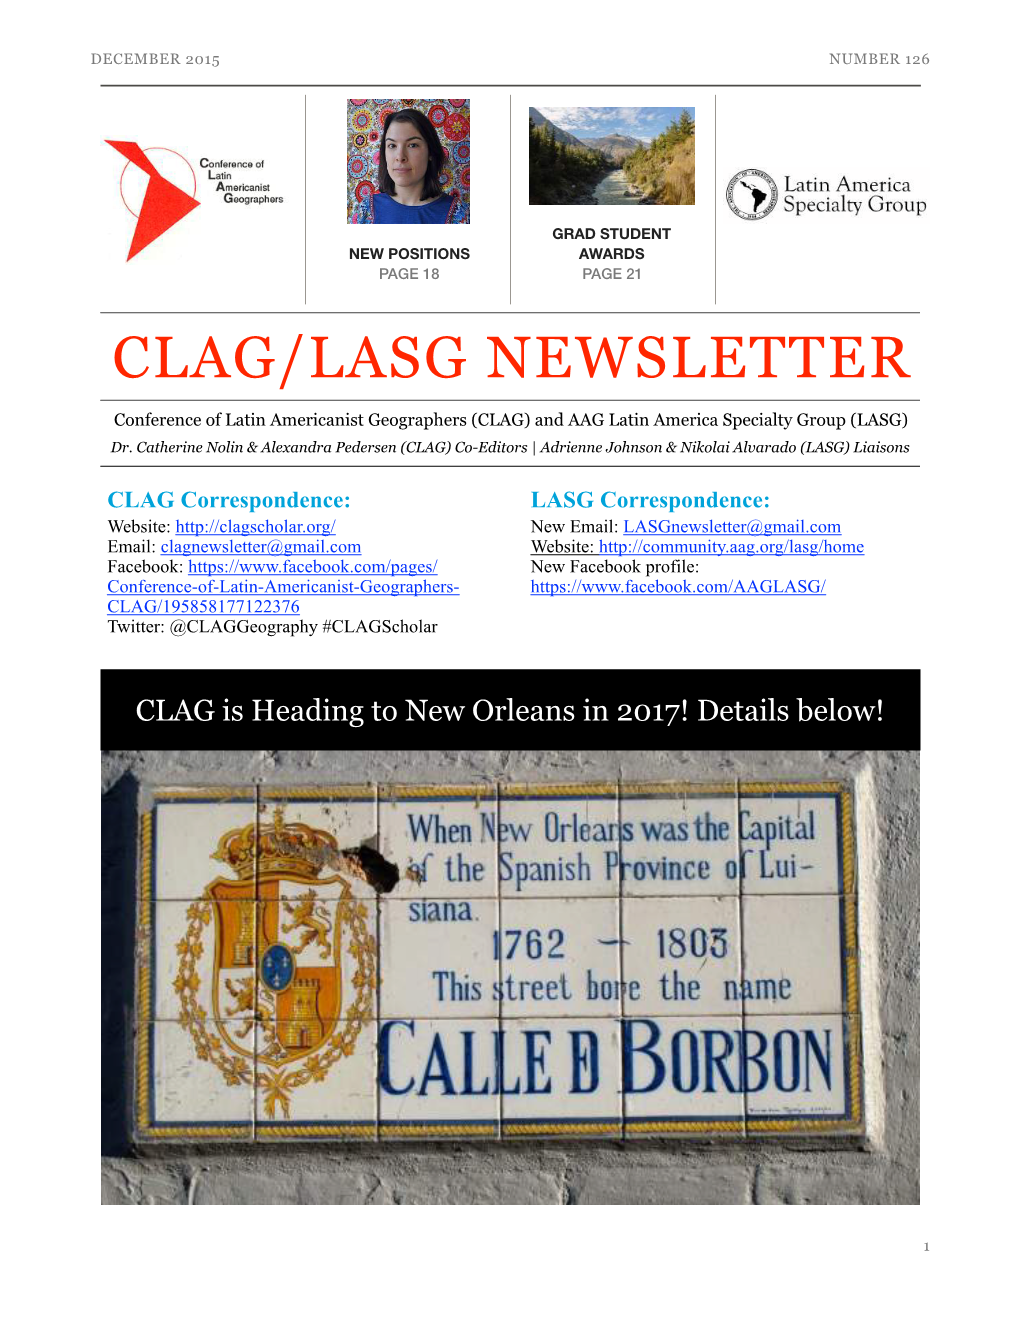 Clag/Lasg Newsletter